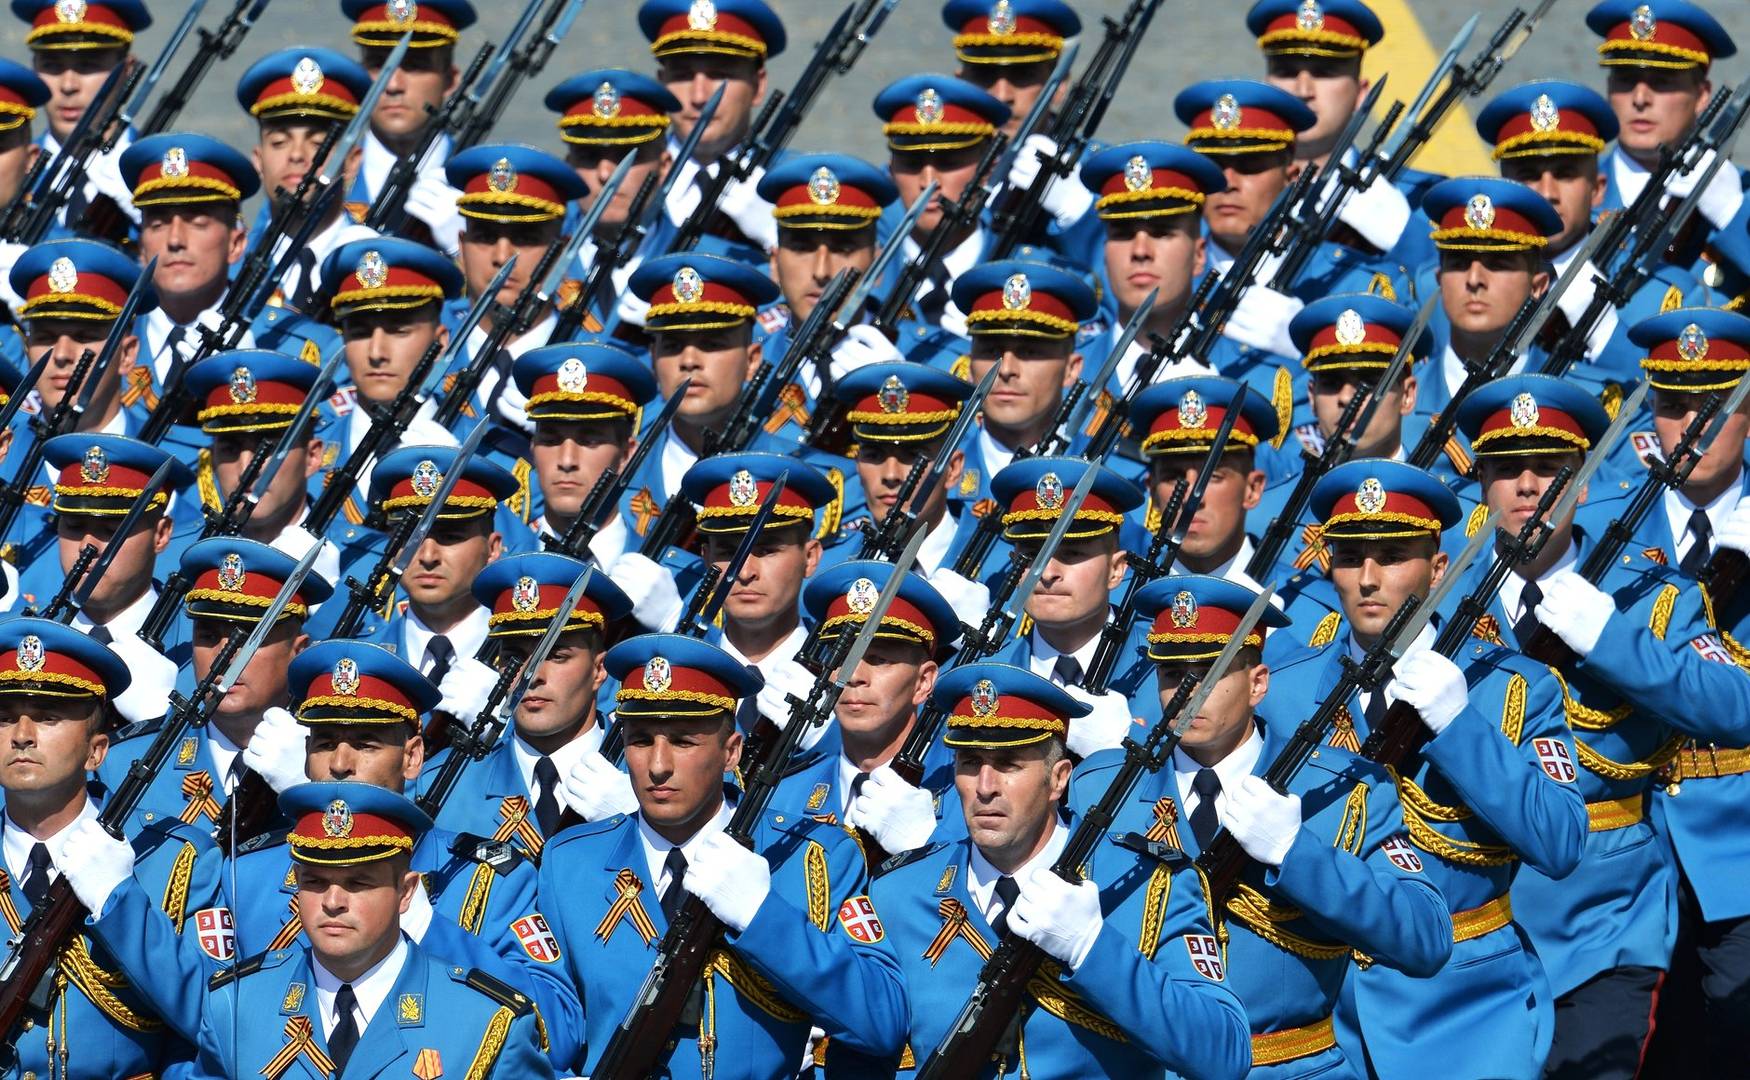 Гвардия Сербии на параде в честь 70-летия Победы